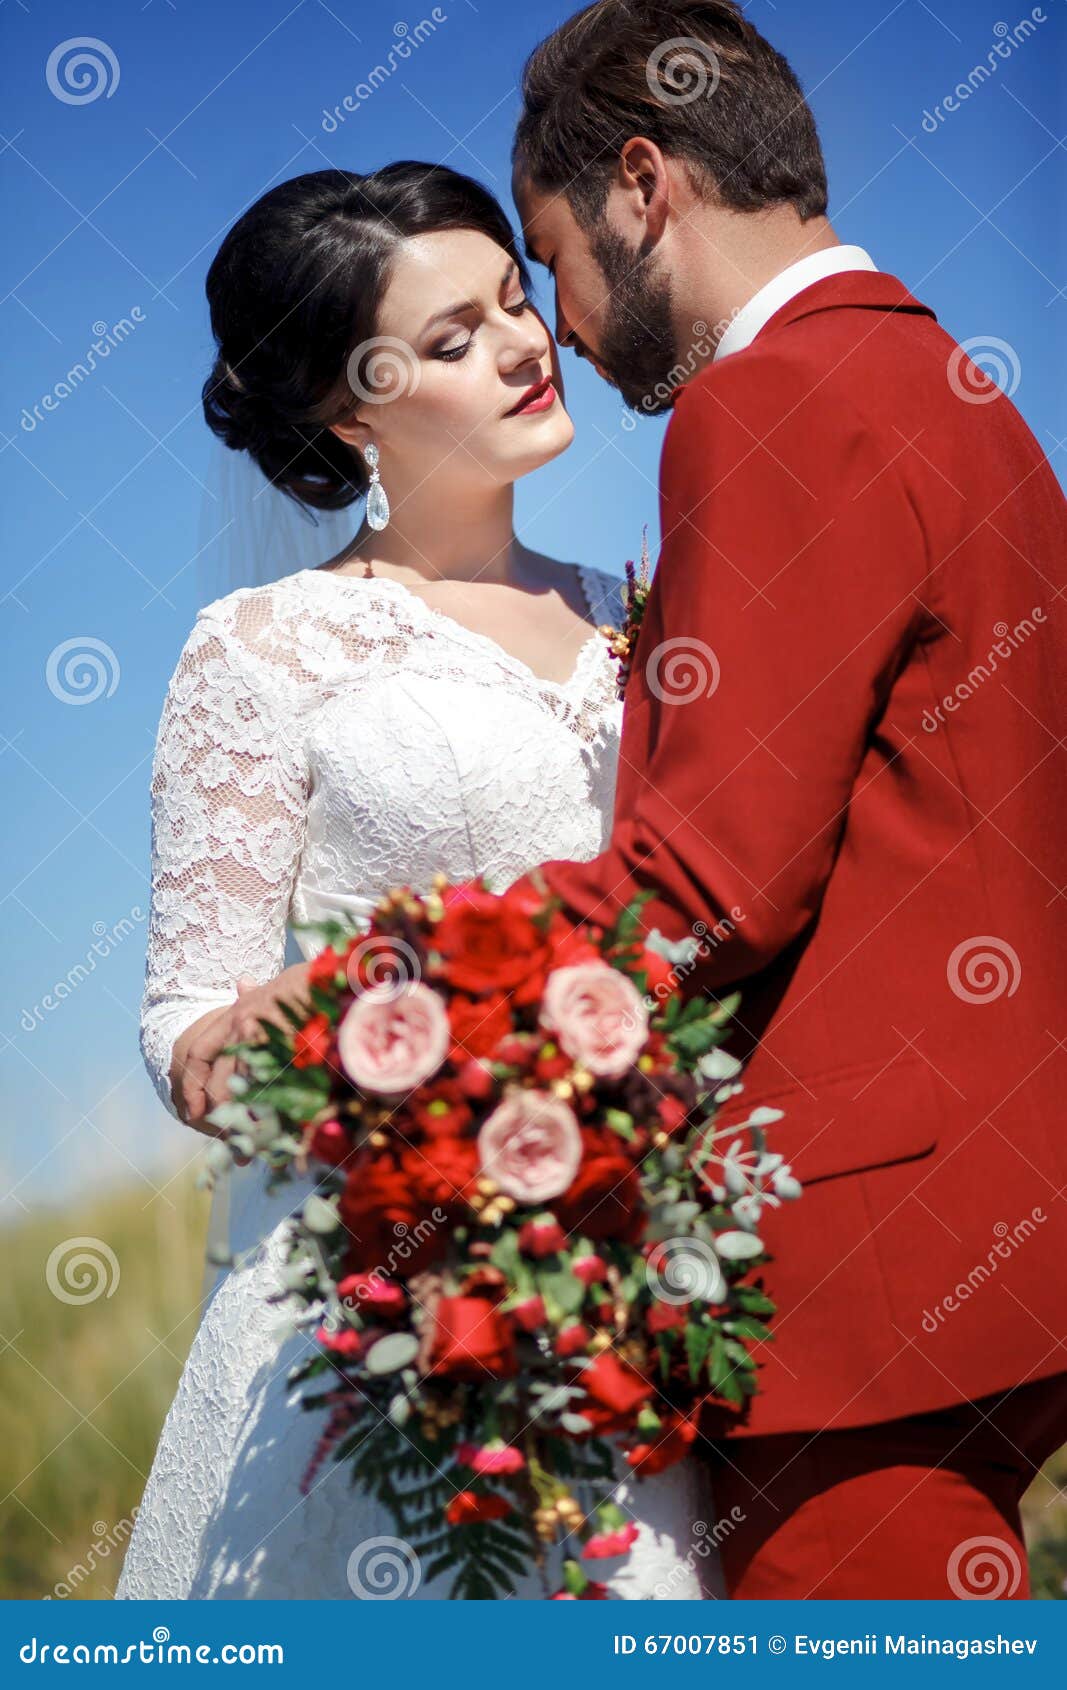 新娘和新郎，室外可爱的夫妇，与红色花的婚姻的新娘花束 蓝天，绿草在背景中. 新娘和新郎，室外可爱的夫妇，巨大别致的与红色花的婚礼新娘花束 蓝色草绿色天空 夫妇的垂直的秀丽画象 有胡子和髭的时髦的人在红色衣服 婚礼颜色马尔萨拉